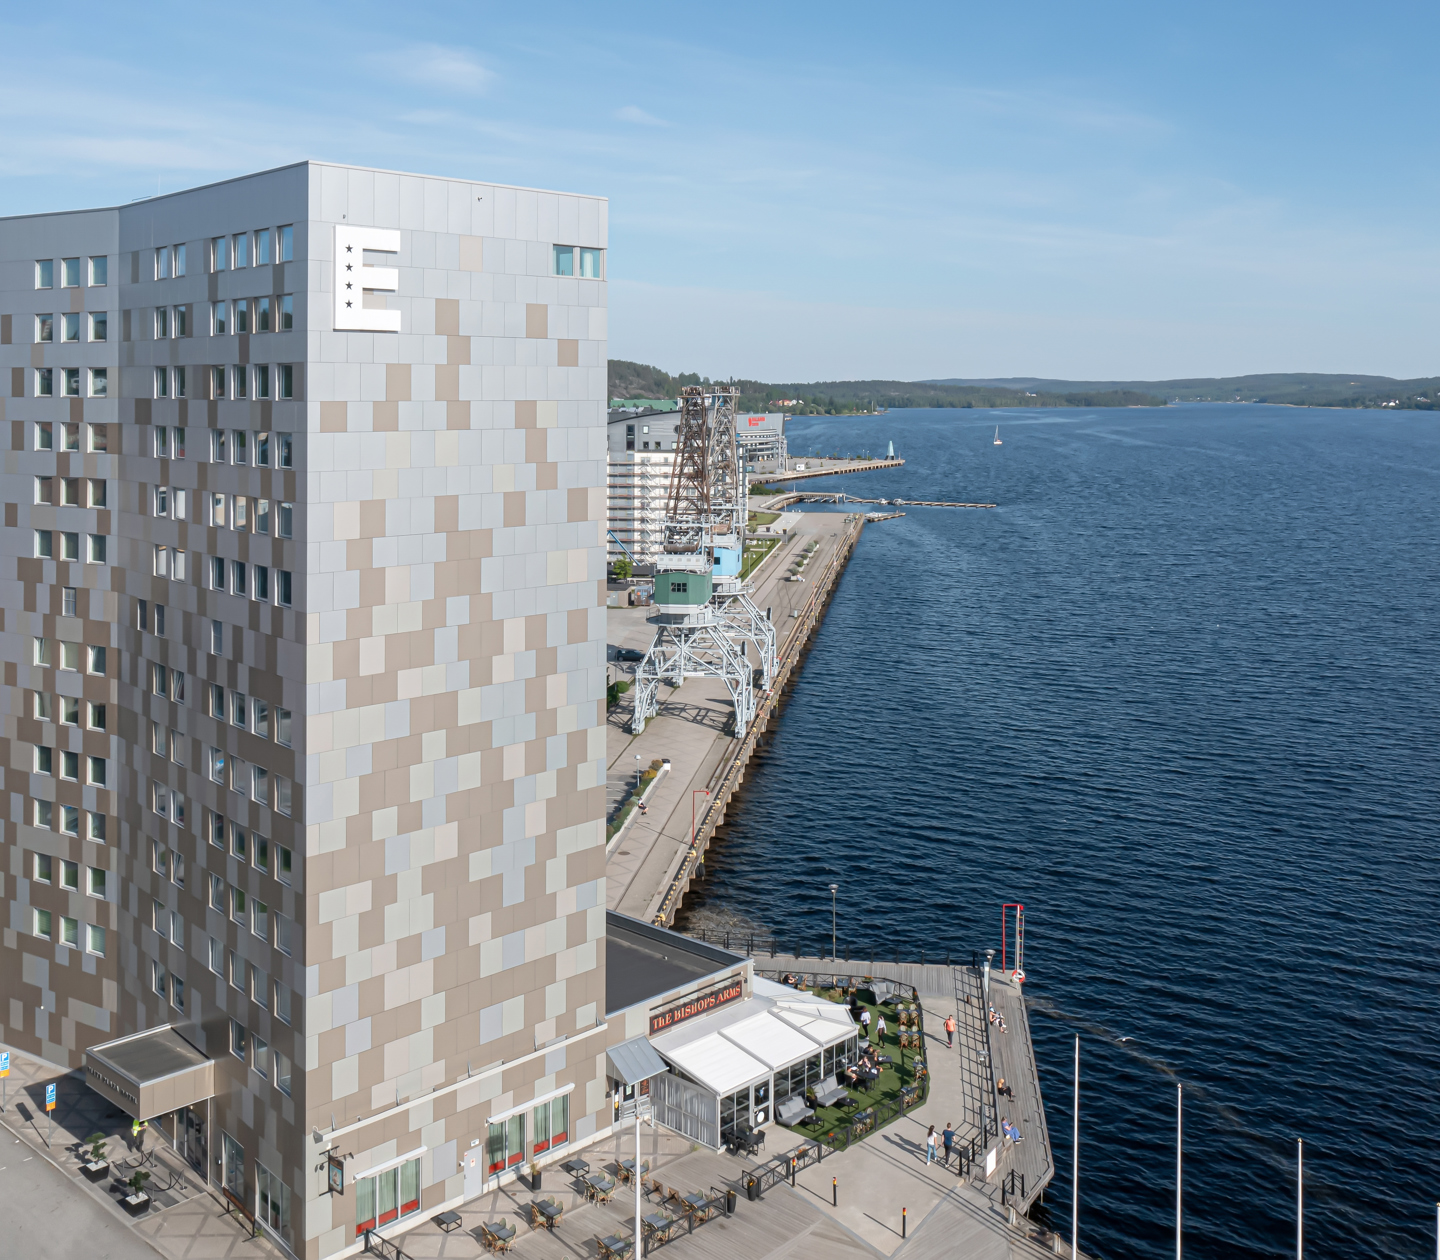 Fasaden på Elite Plaza Hotel i Örnsköldsvik